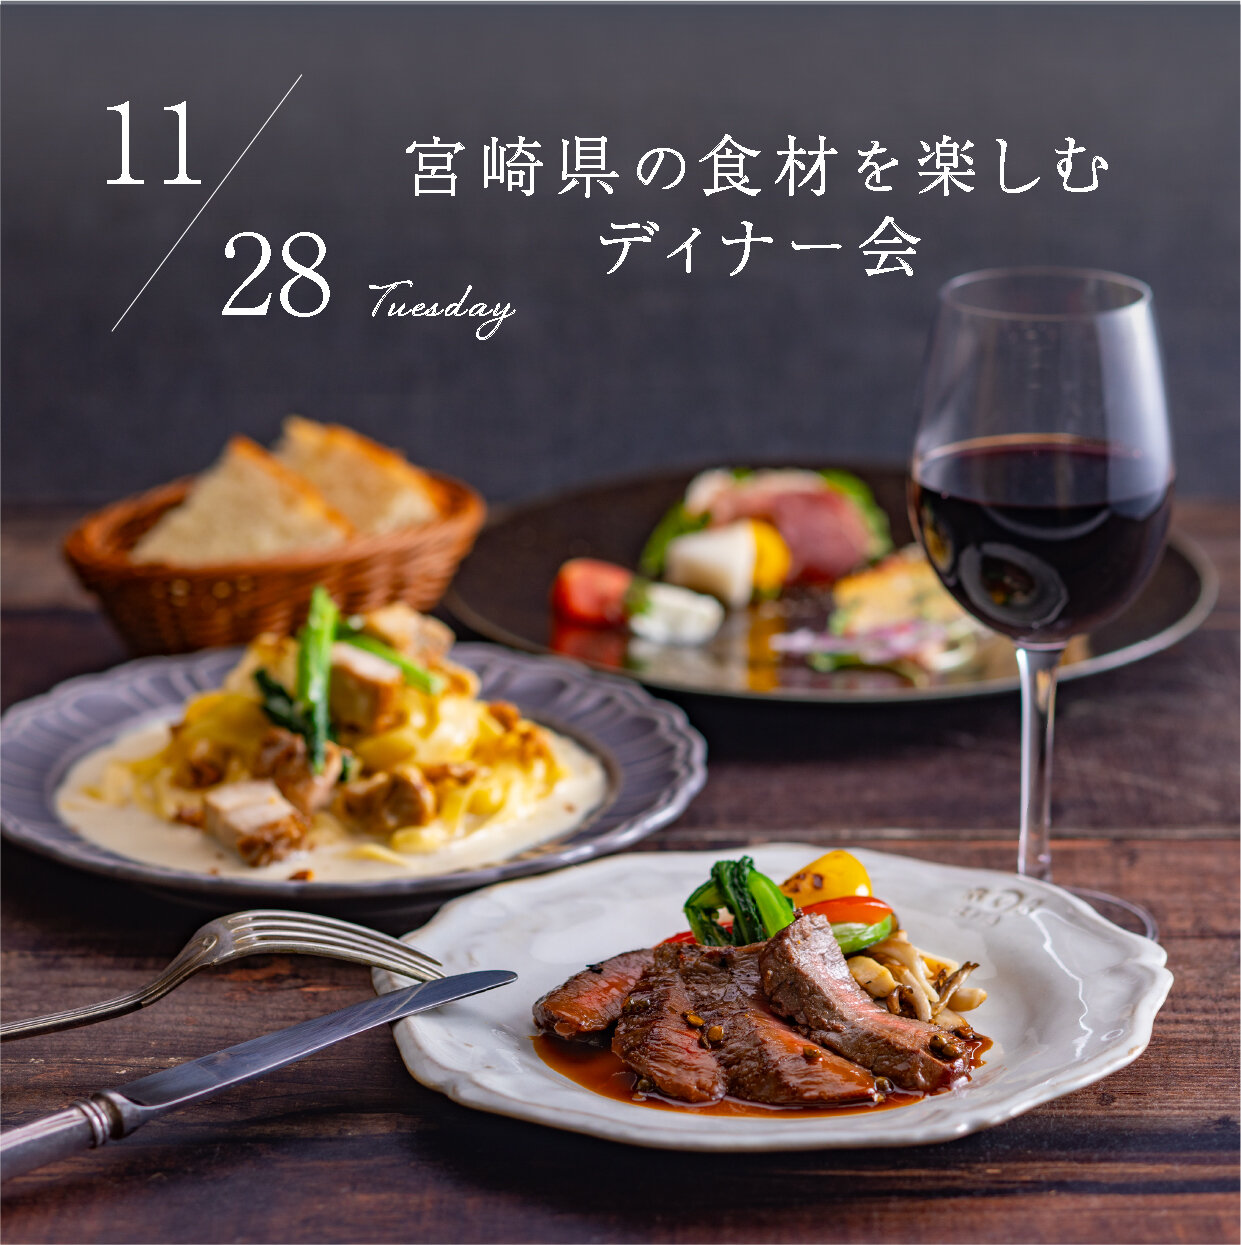 LMH-dinner試食会ちらし-231128.jpg